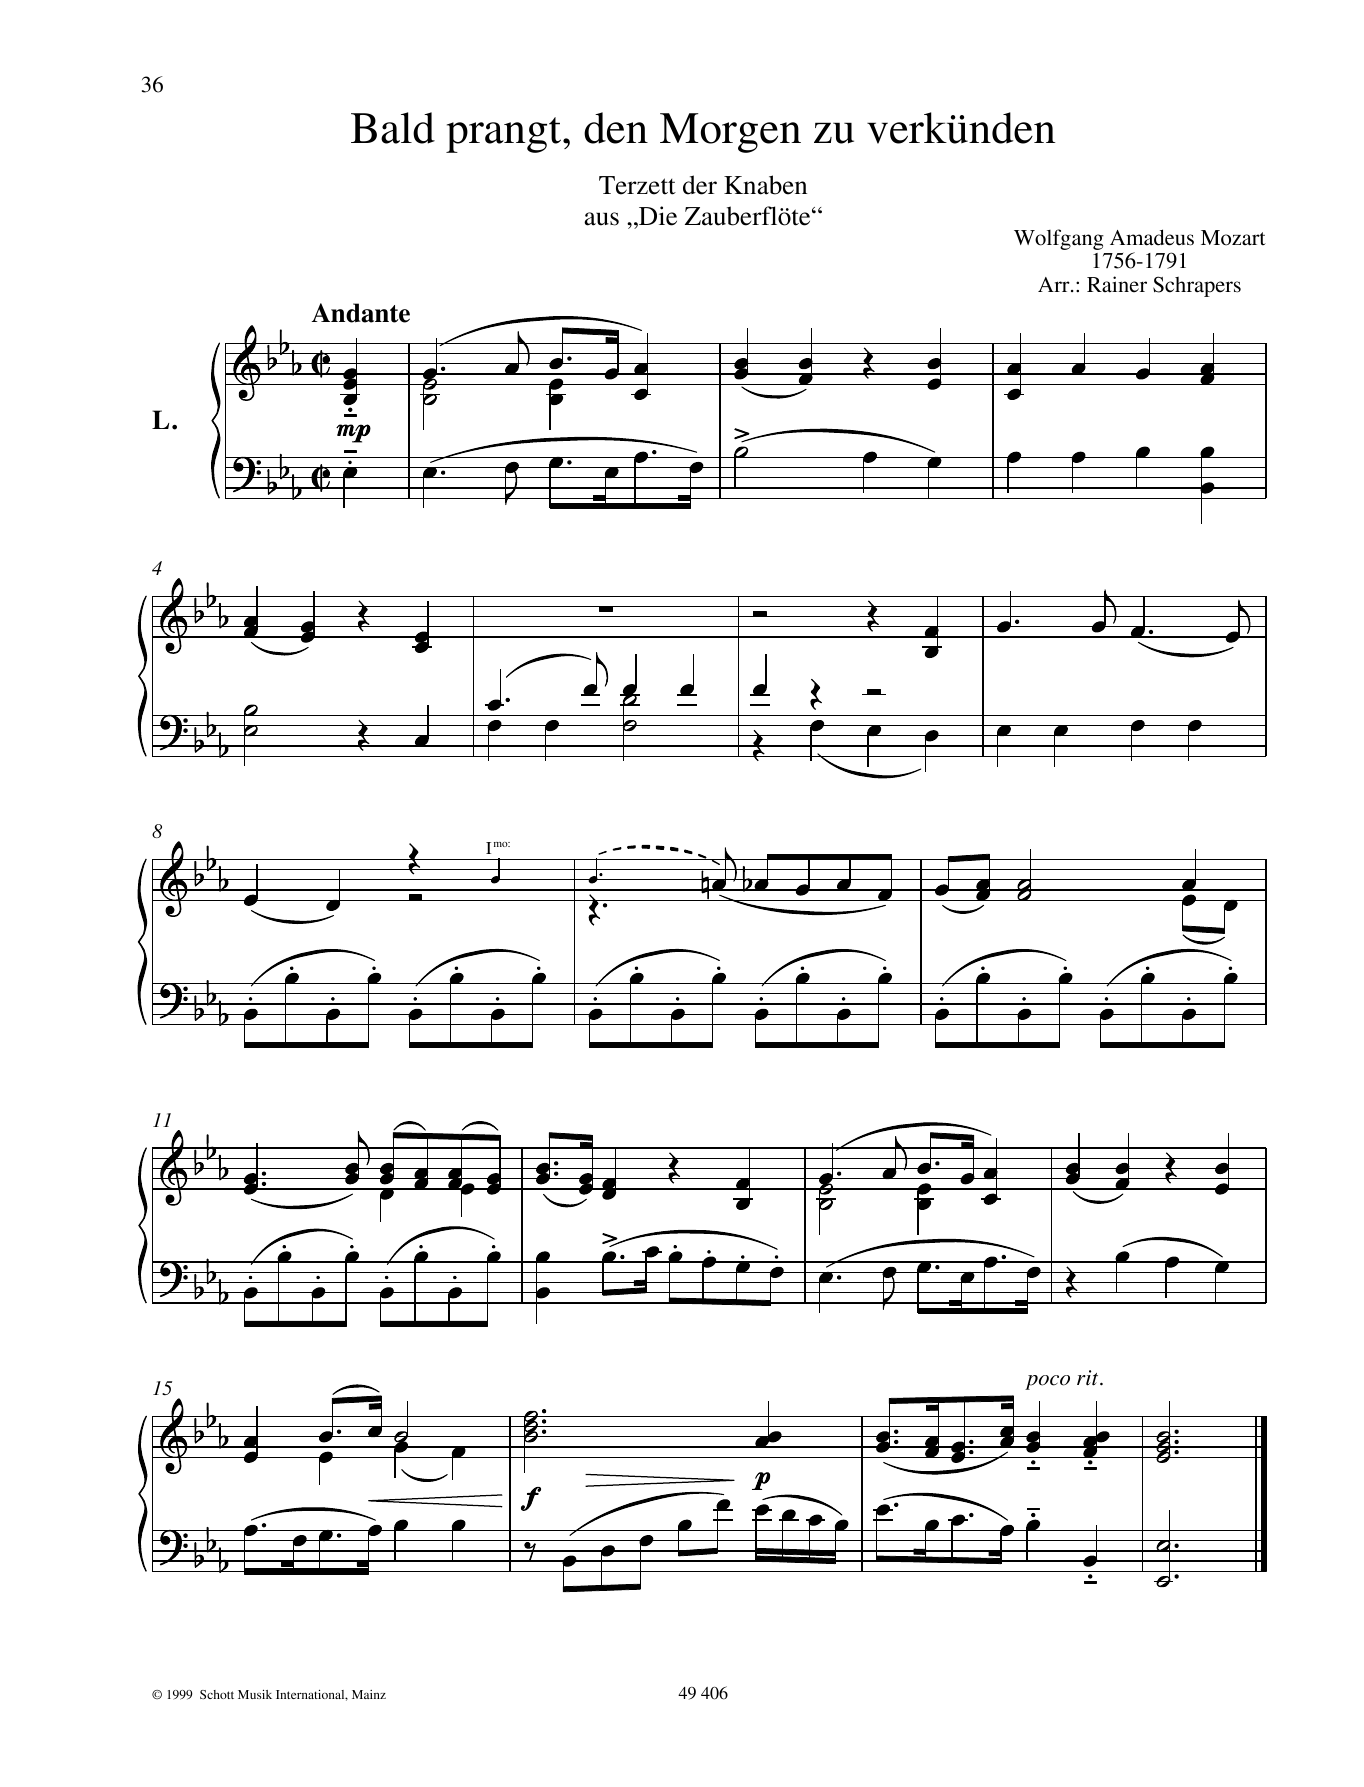 Wolfgang Amadeus Mozart Bald prangt, den Morgen zu verkünden sheet music notes and chords arranged for Piano Duet